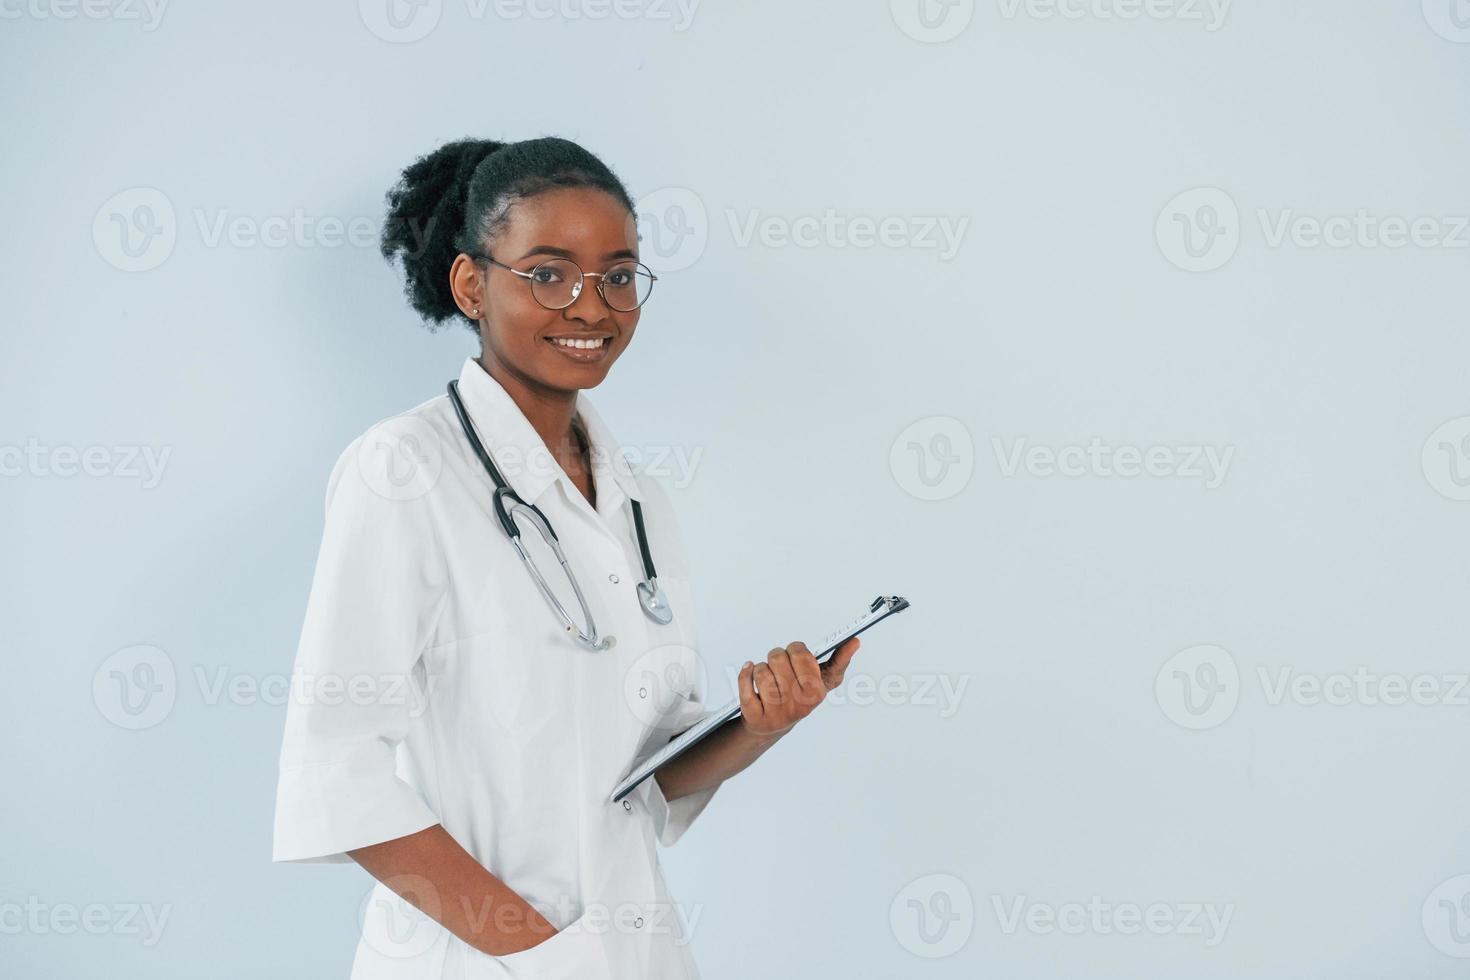 il giovane medico afroamericano è su sfondo bianco foto